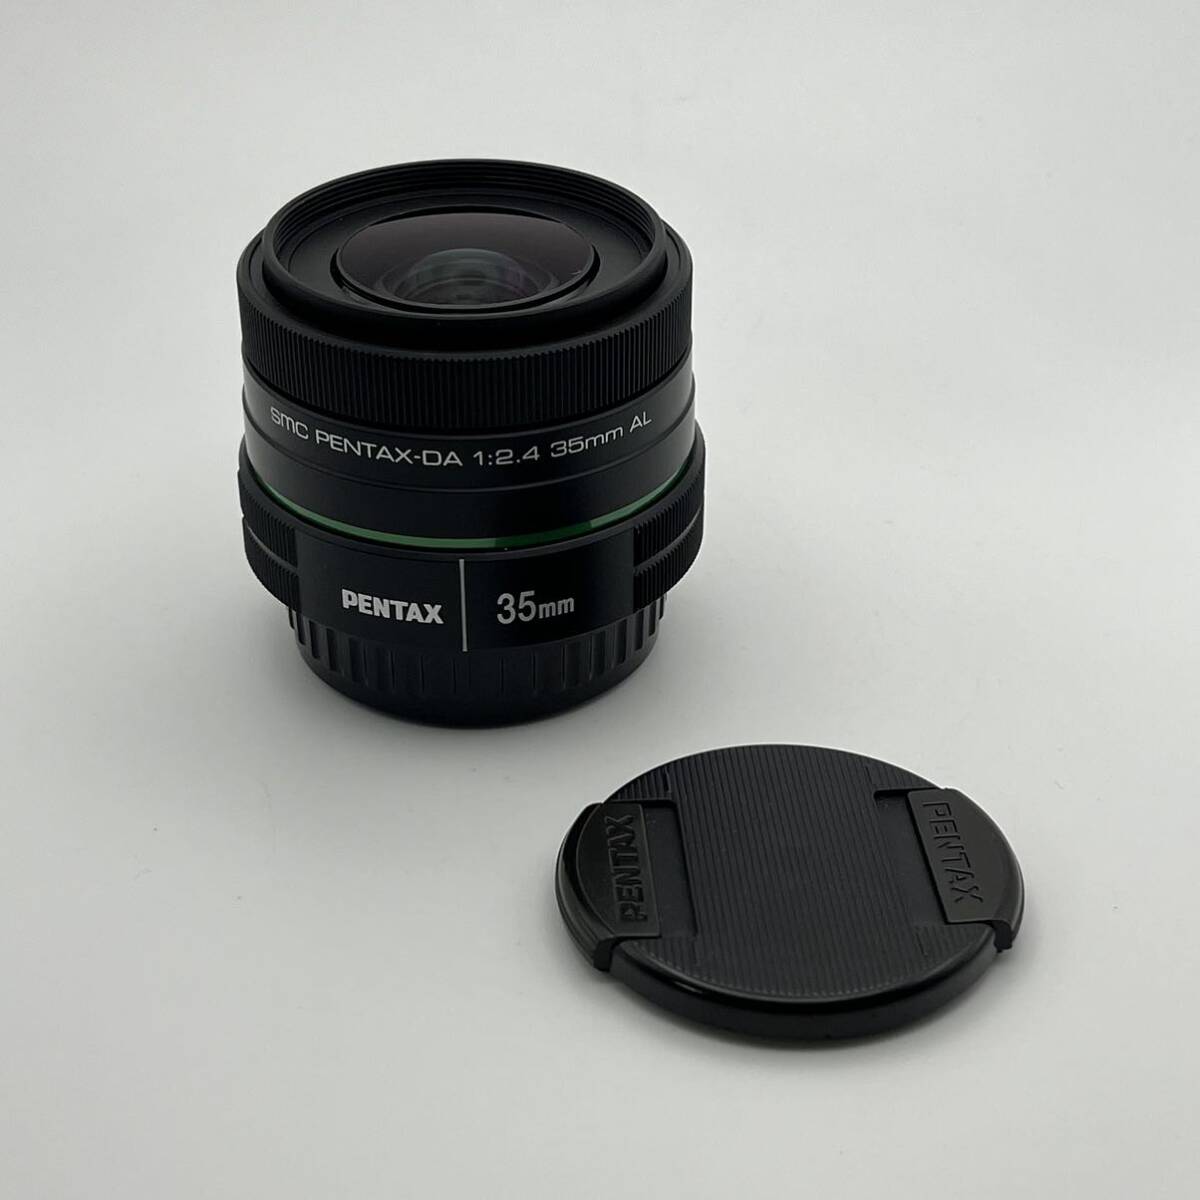 smc PENTAX-DA 35mm F2.4 AL smcペンタックスDA Kマウント 単焦点標準レンズ_画像1